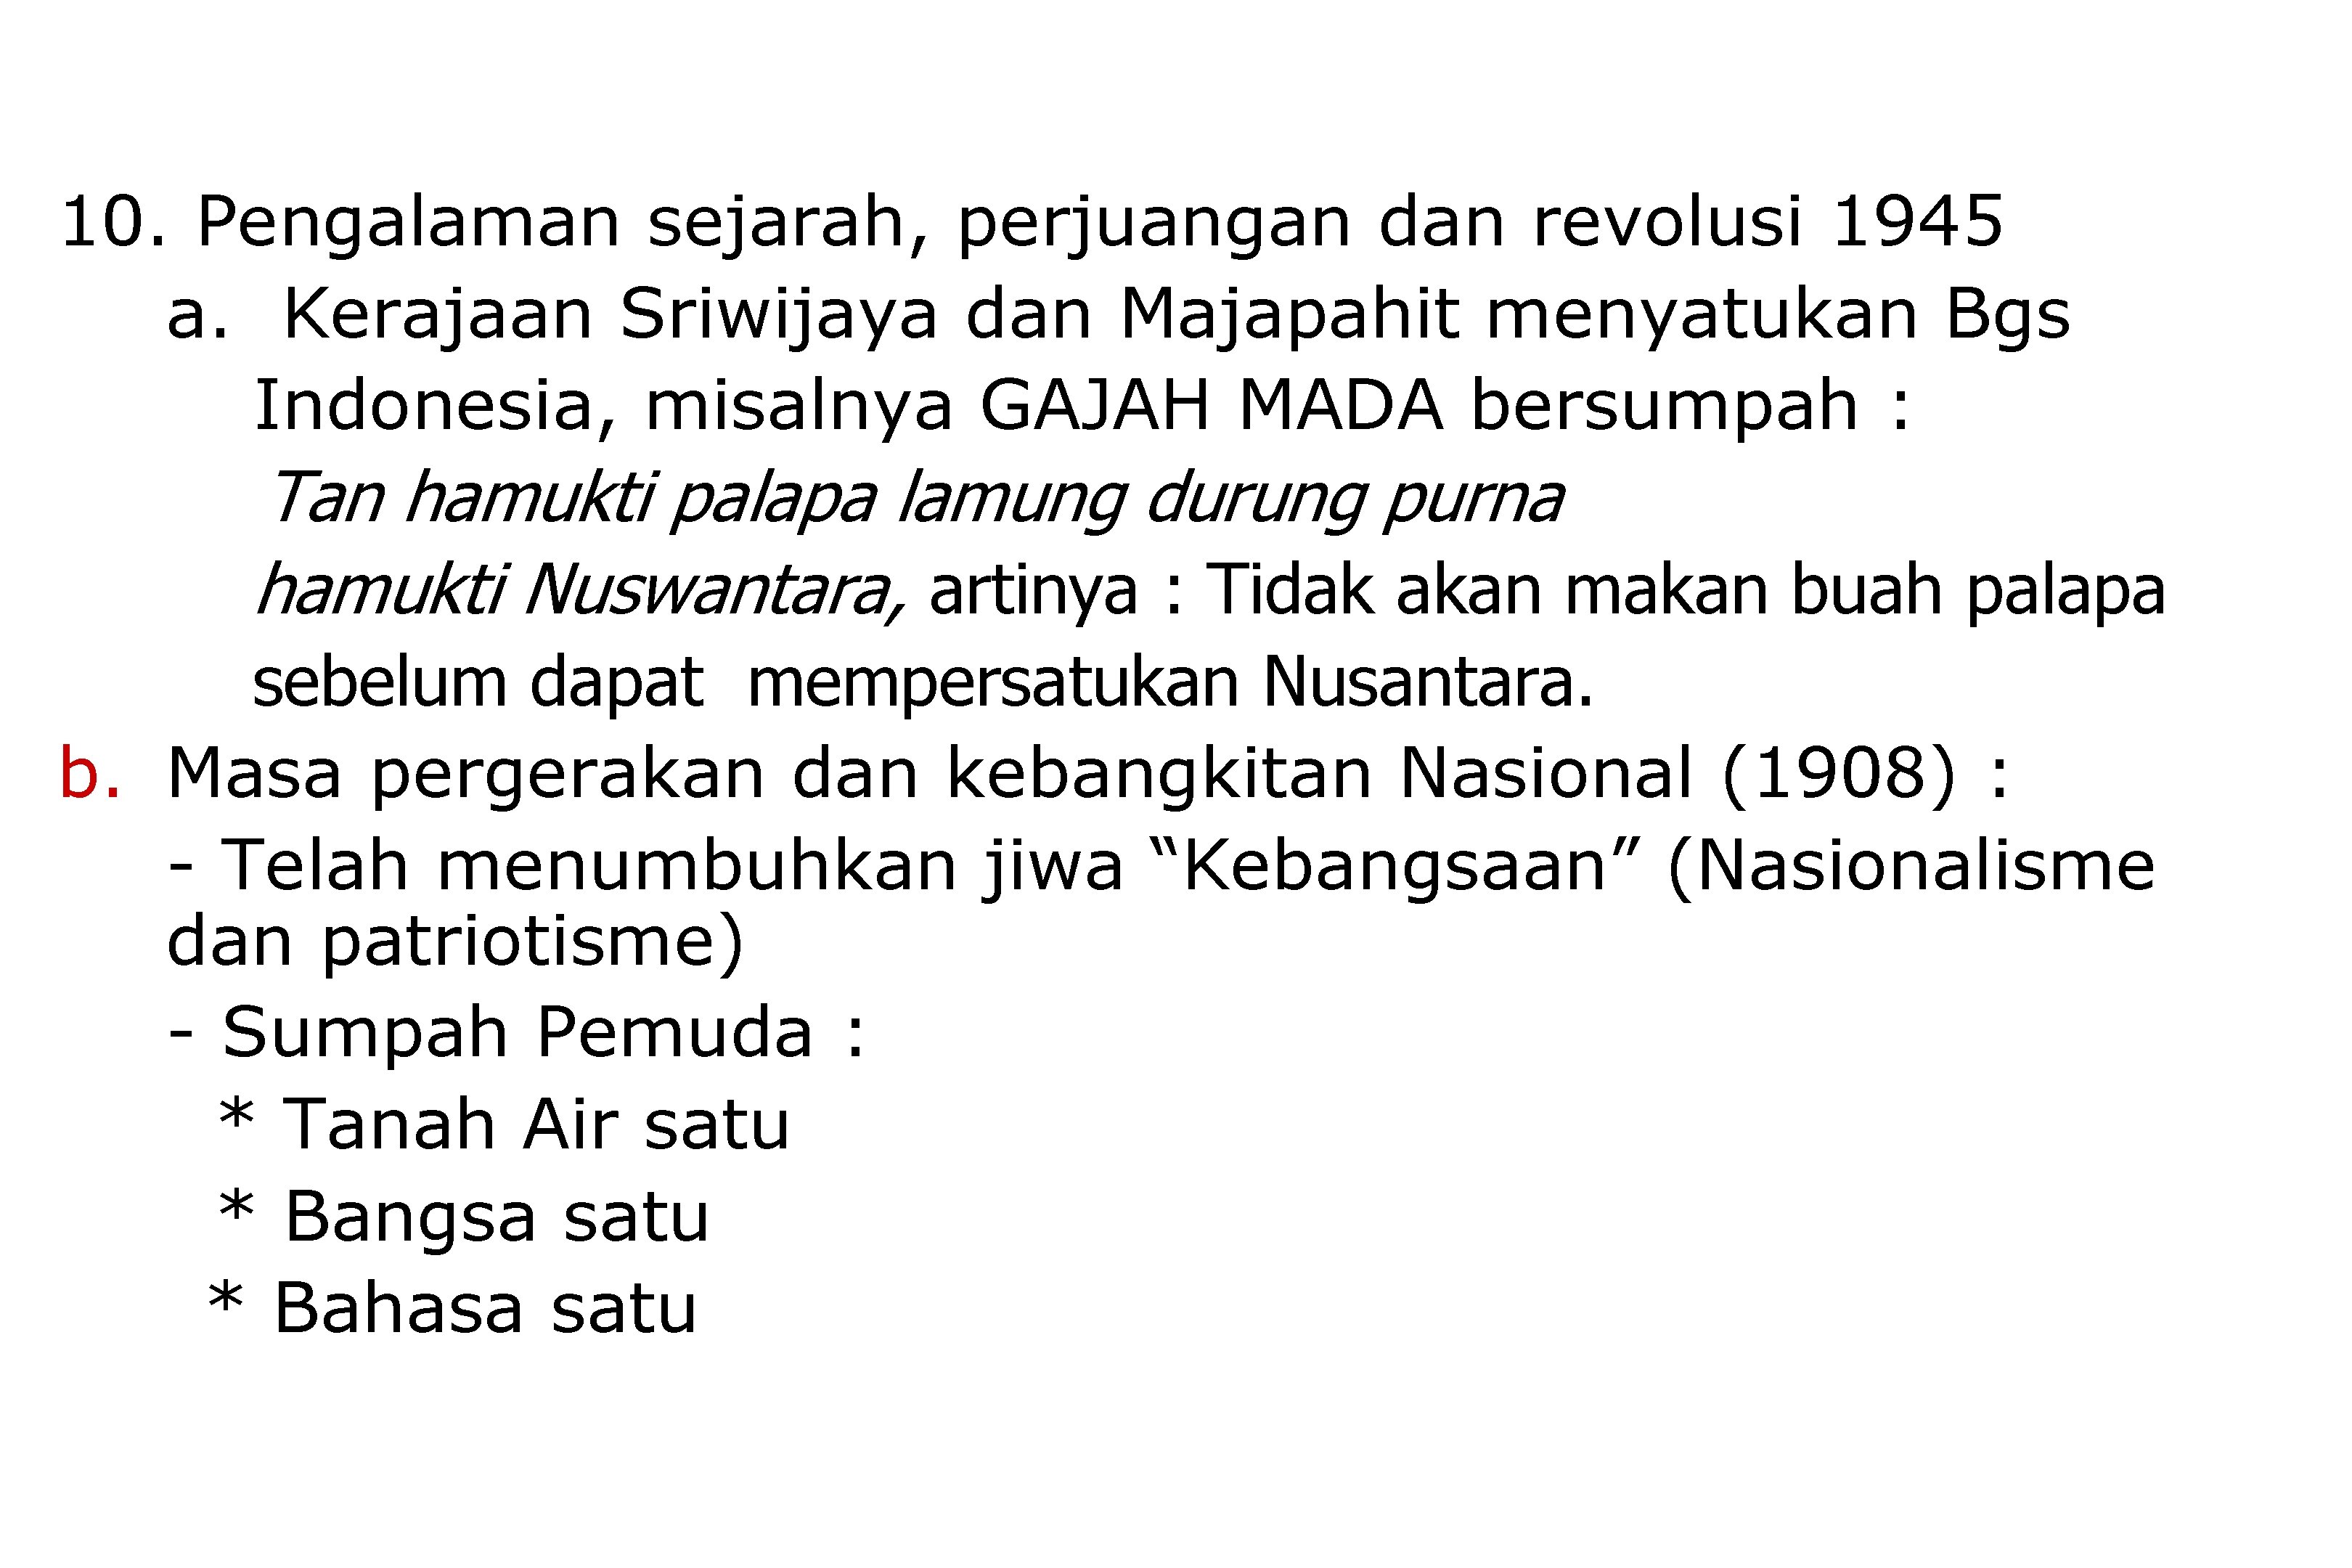 10. Pengalaman sejarah, perjuangan dan revolusi 1945 a. Kerajaan Sriwijaya dan Majapahit menyatukan Bgs